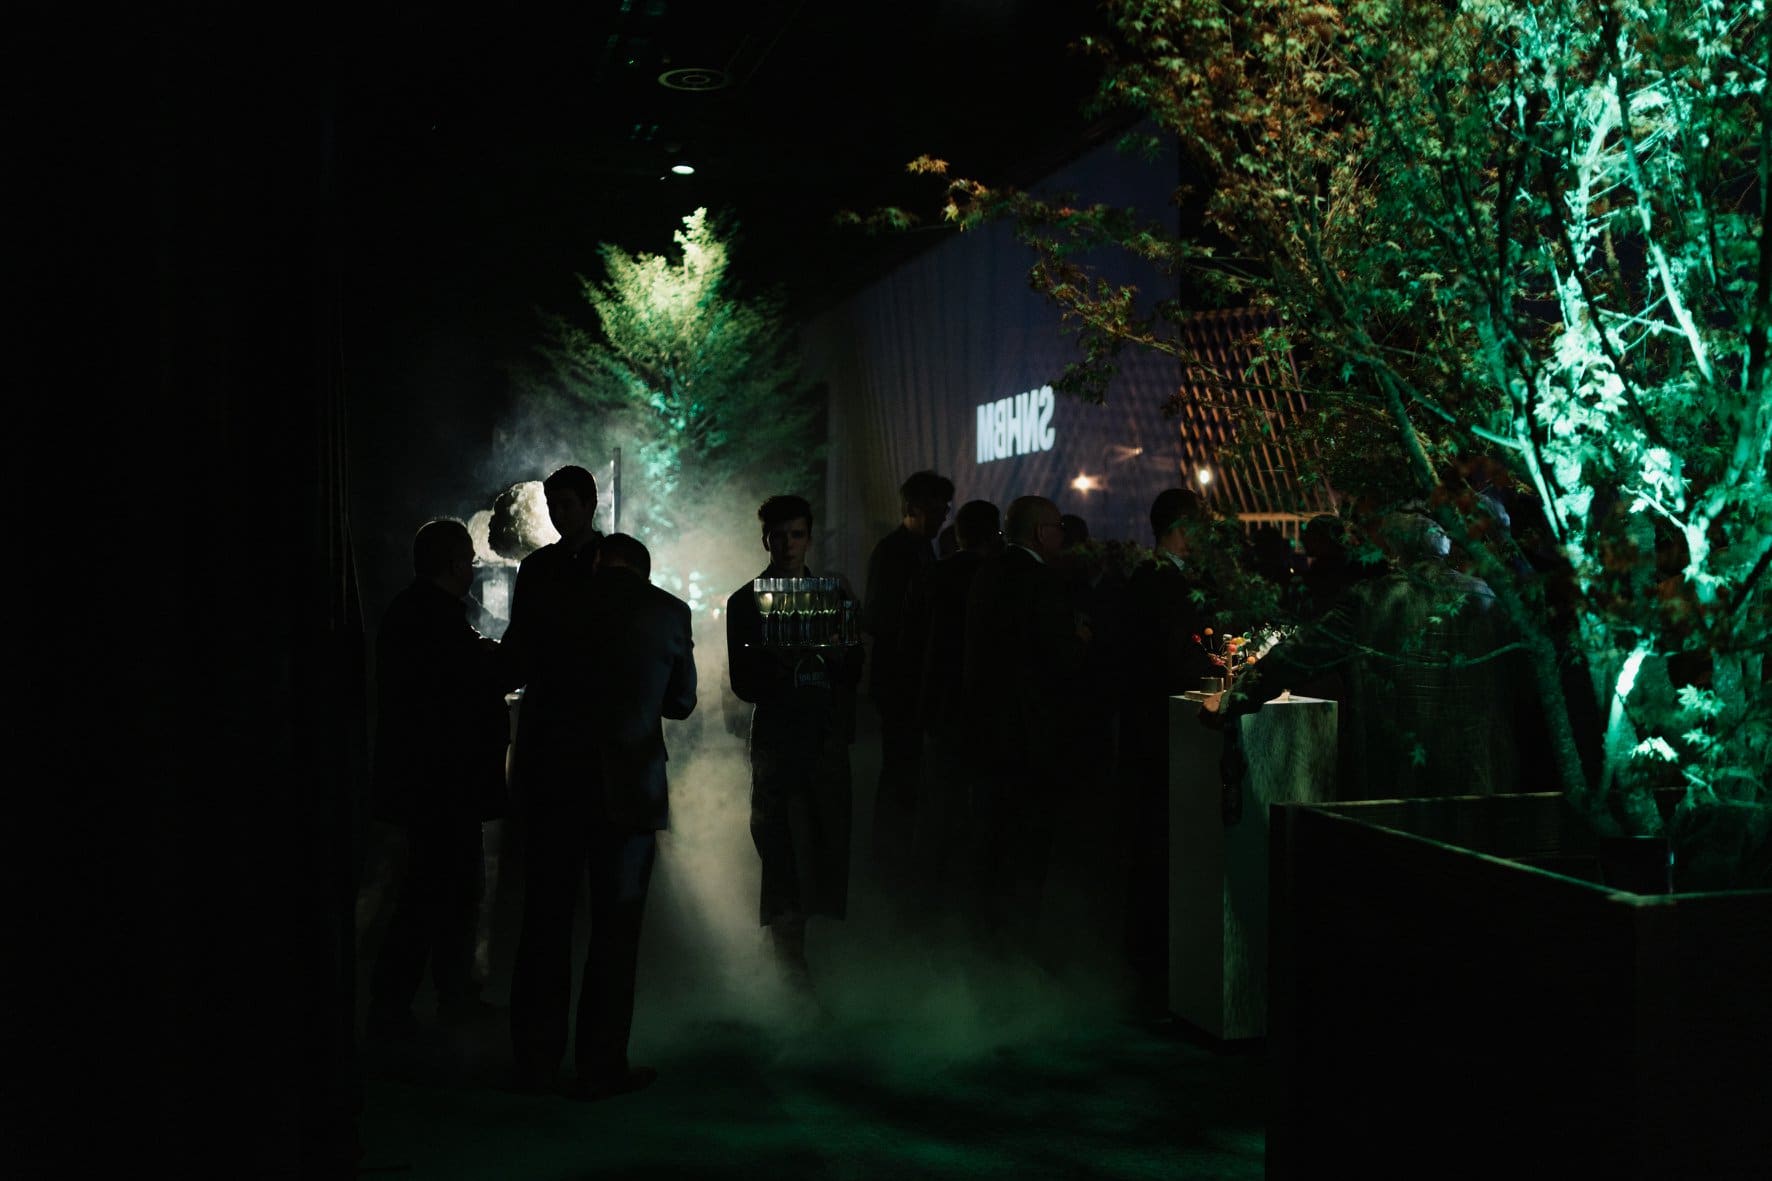 Shine a light agence évènementielle luxembourg - créateur d'expériences immersives - 100ème anniversaire SNHBM